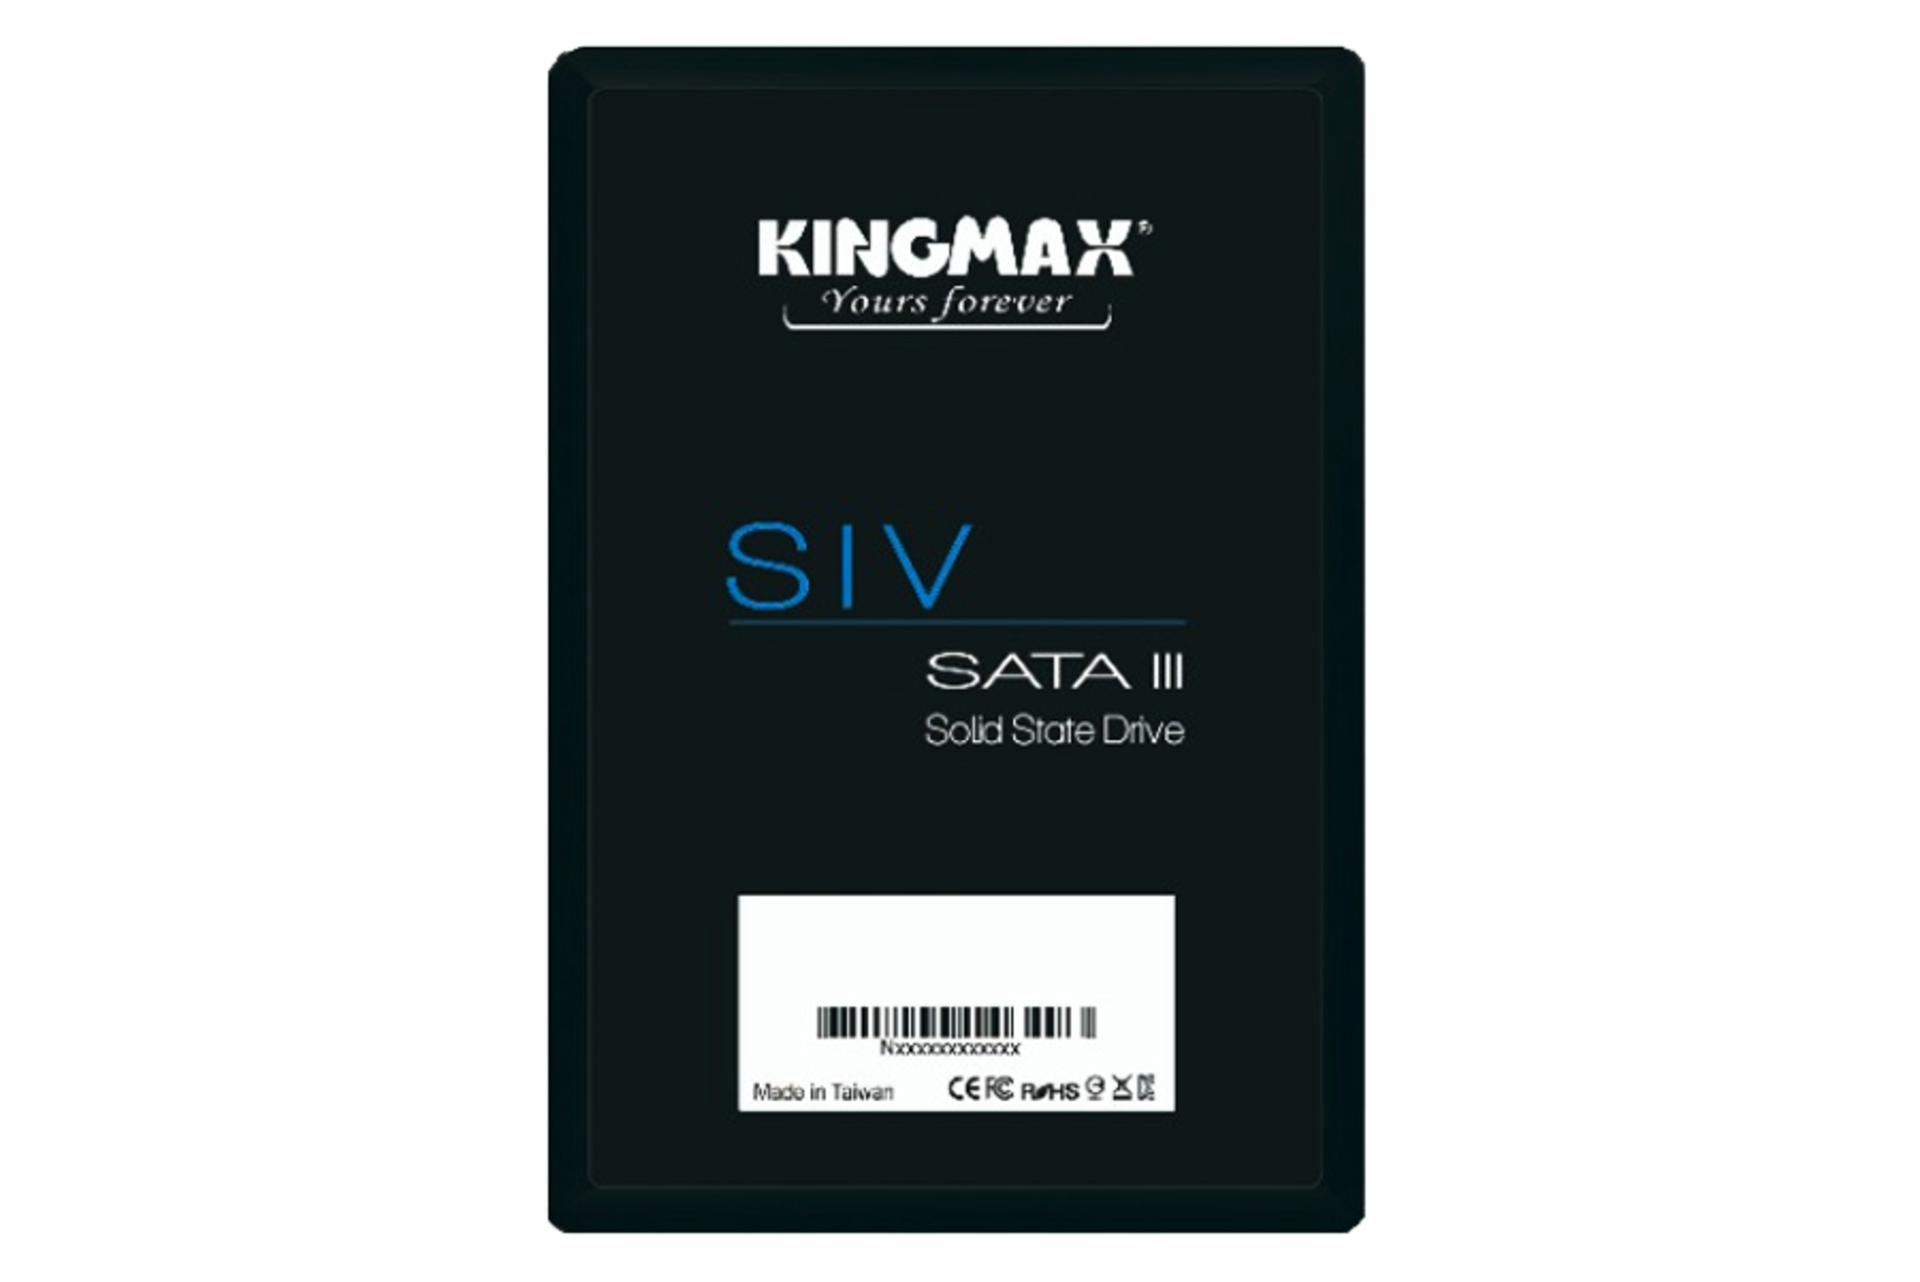 کینگ مکس SIV SATA 2.5 Inch ظرفیت 512 گیگابایت